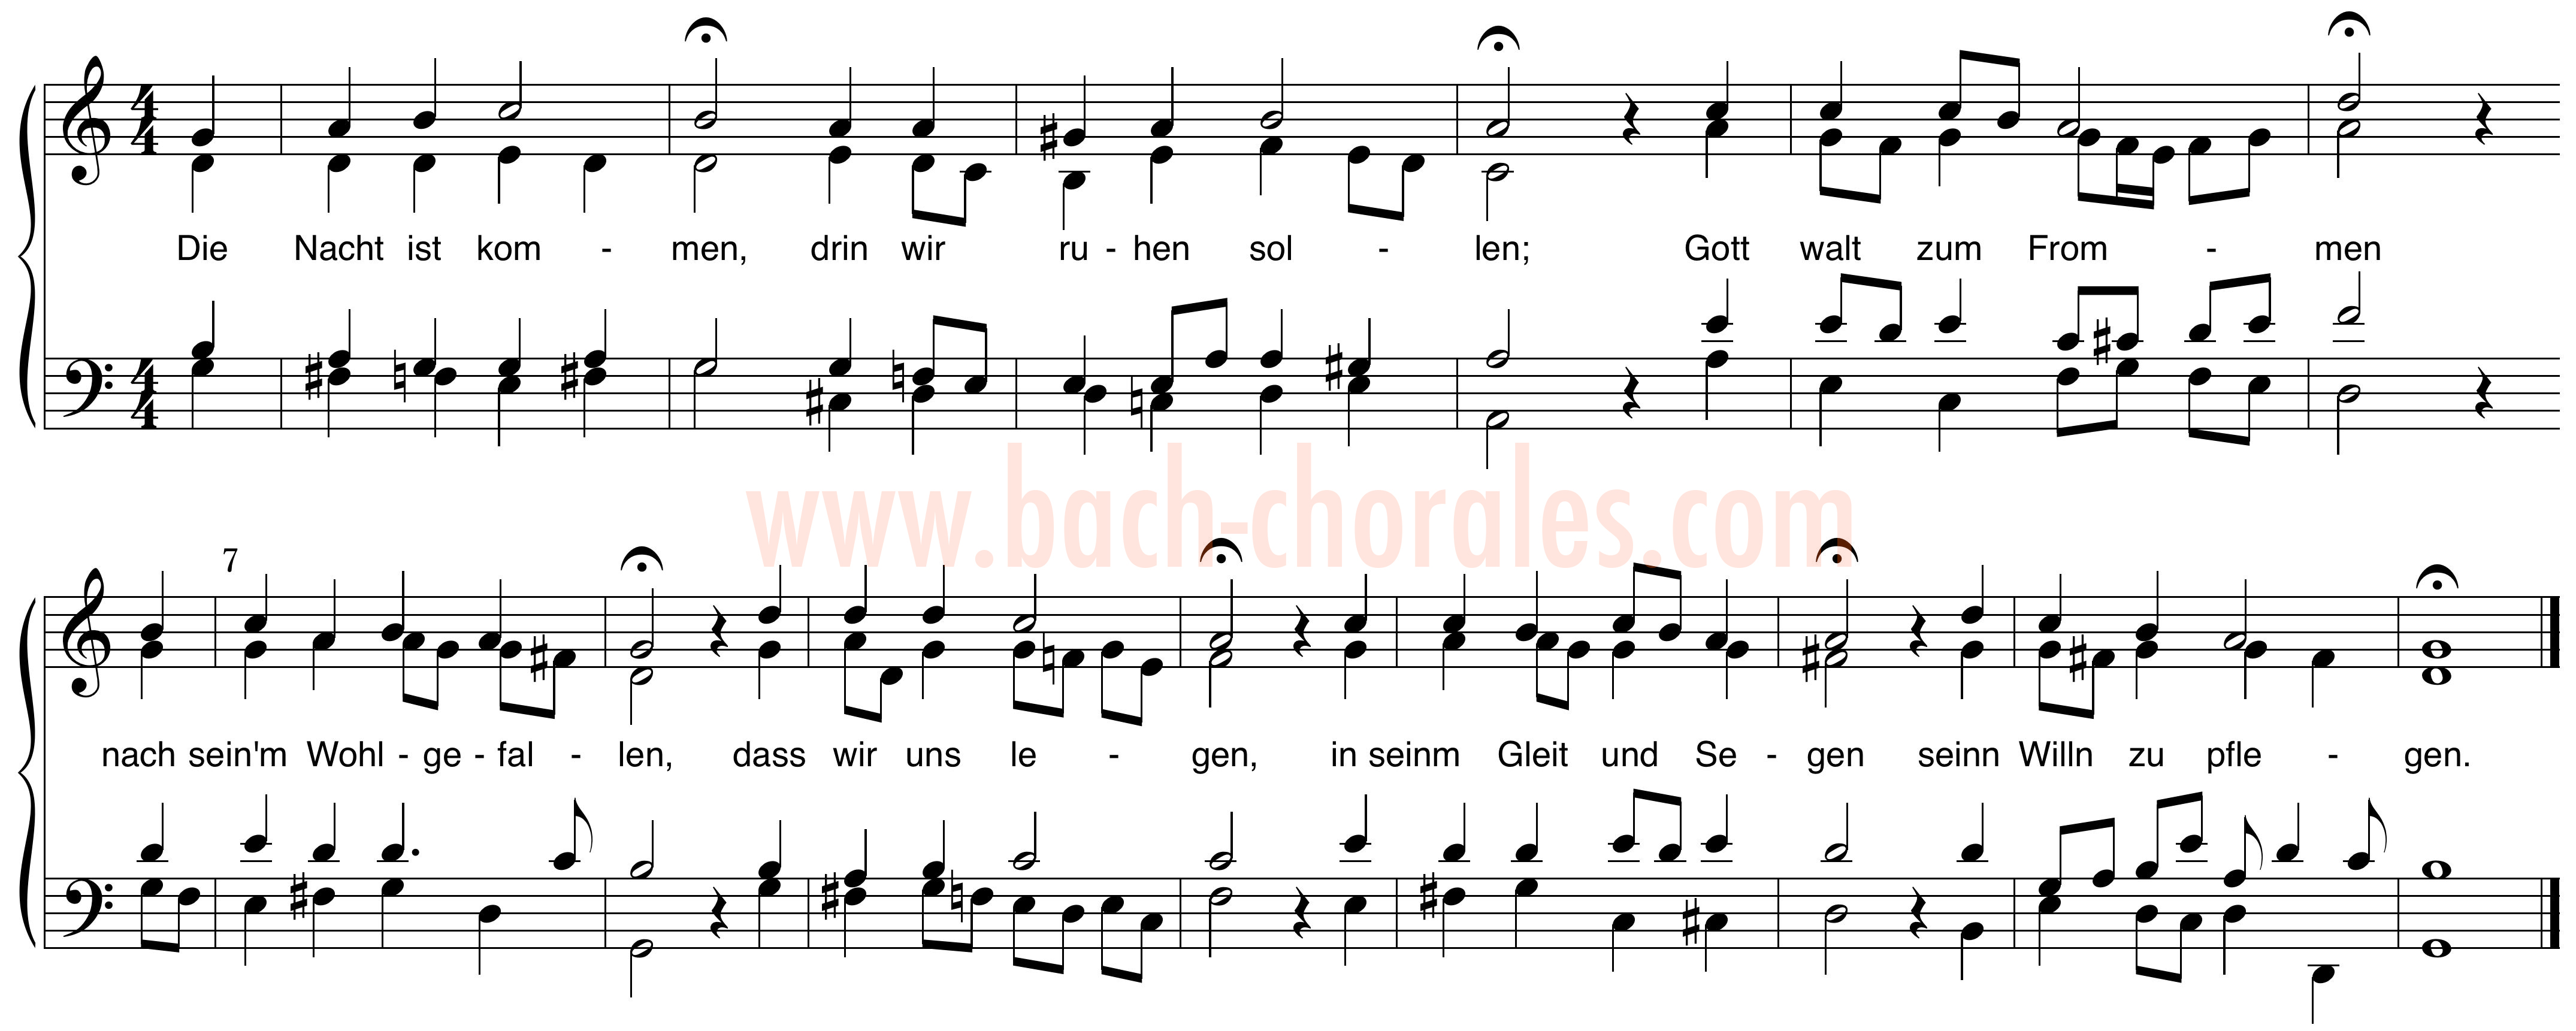 notenbeeld BWV 296 op https://www.bach-chorales.com/